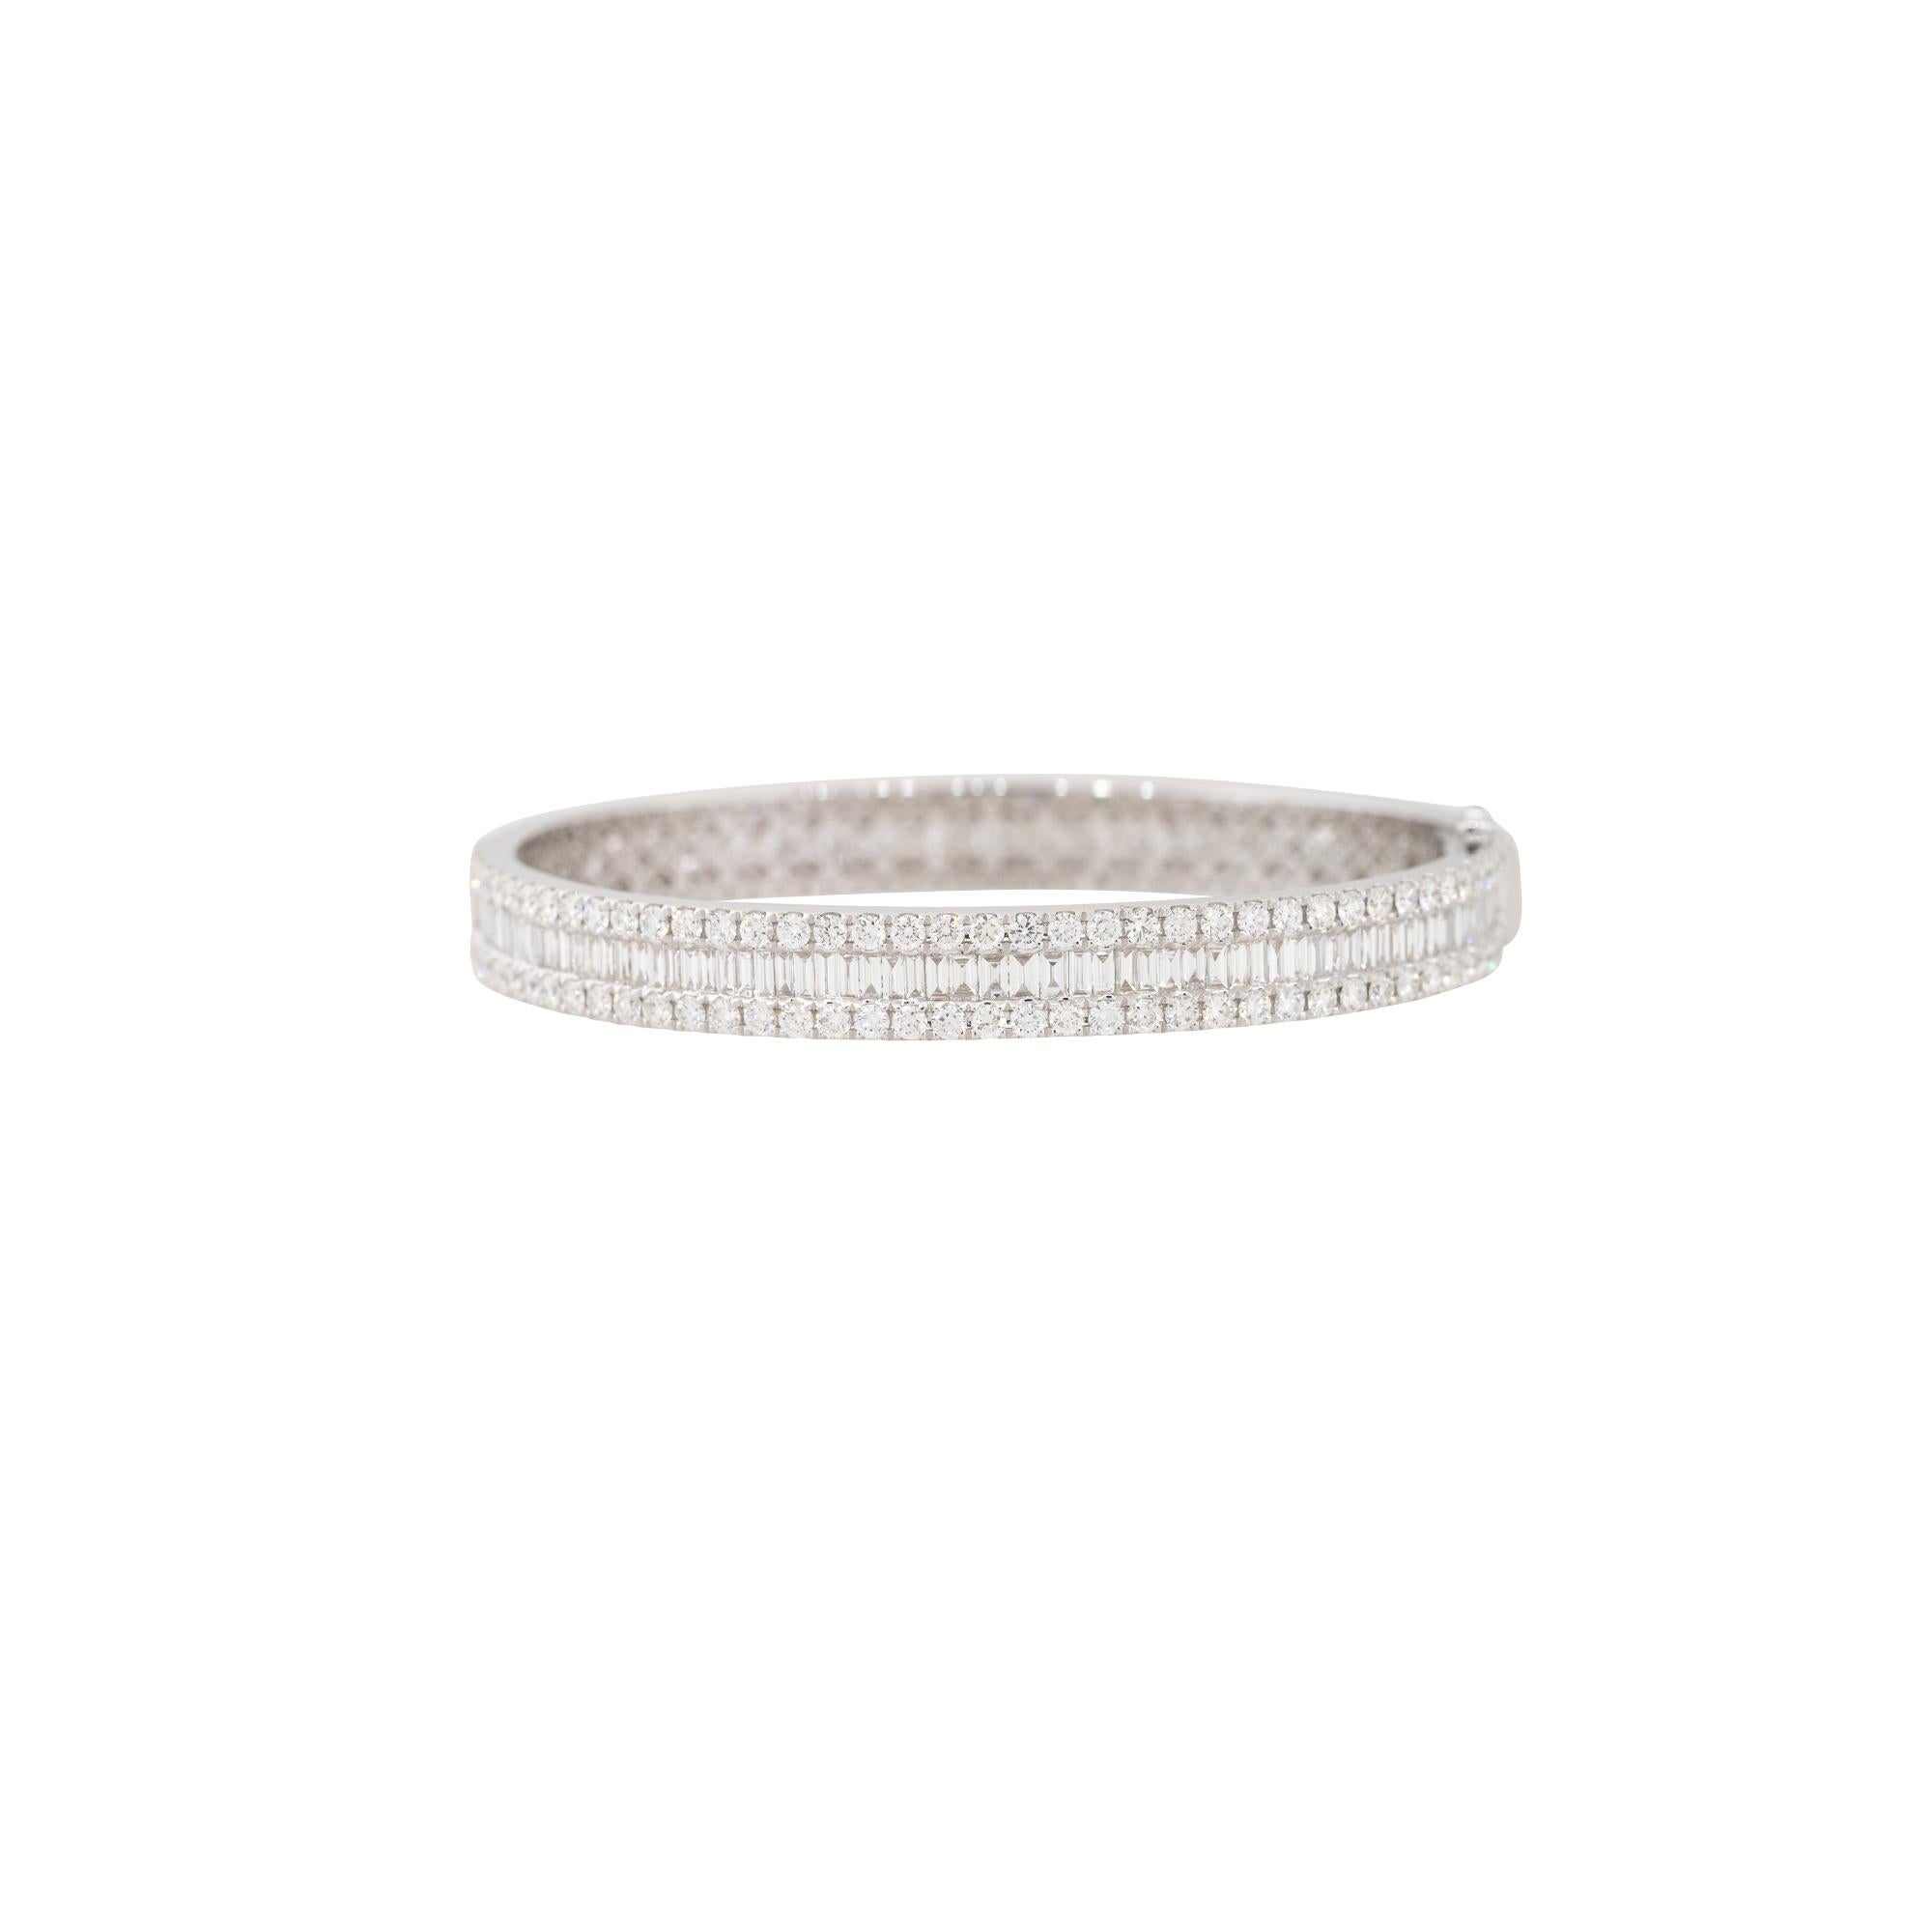 Bracelet en or blanc 18 carats 9,36ctw avec 3 rangées de diamants
MATERIAL : Or blanc 18k
Détails des diamants : Environ 9,36ctw de diamants de taille ronde et de forme baguette.
Taille : Le bracelet convient à un poignet de 7